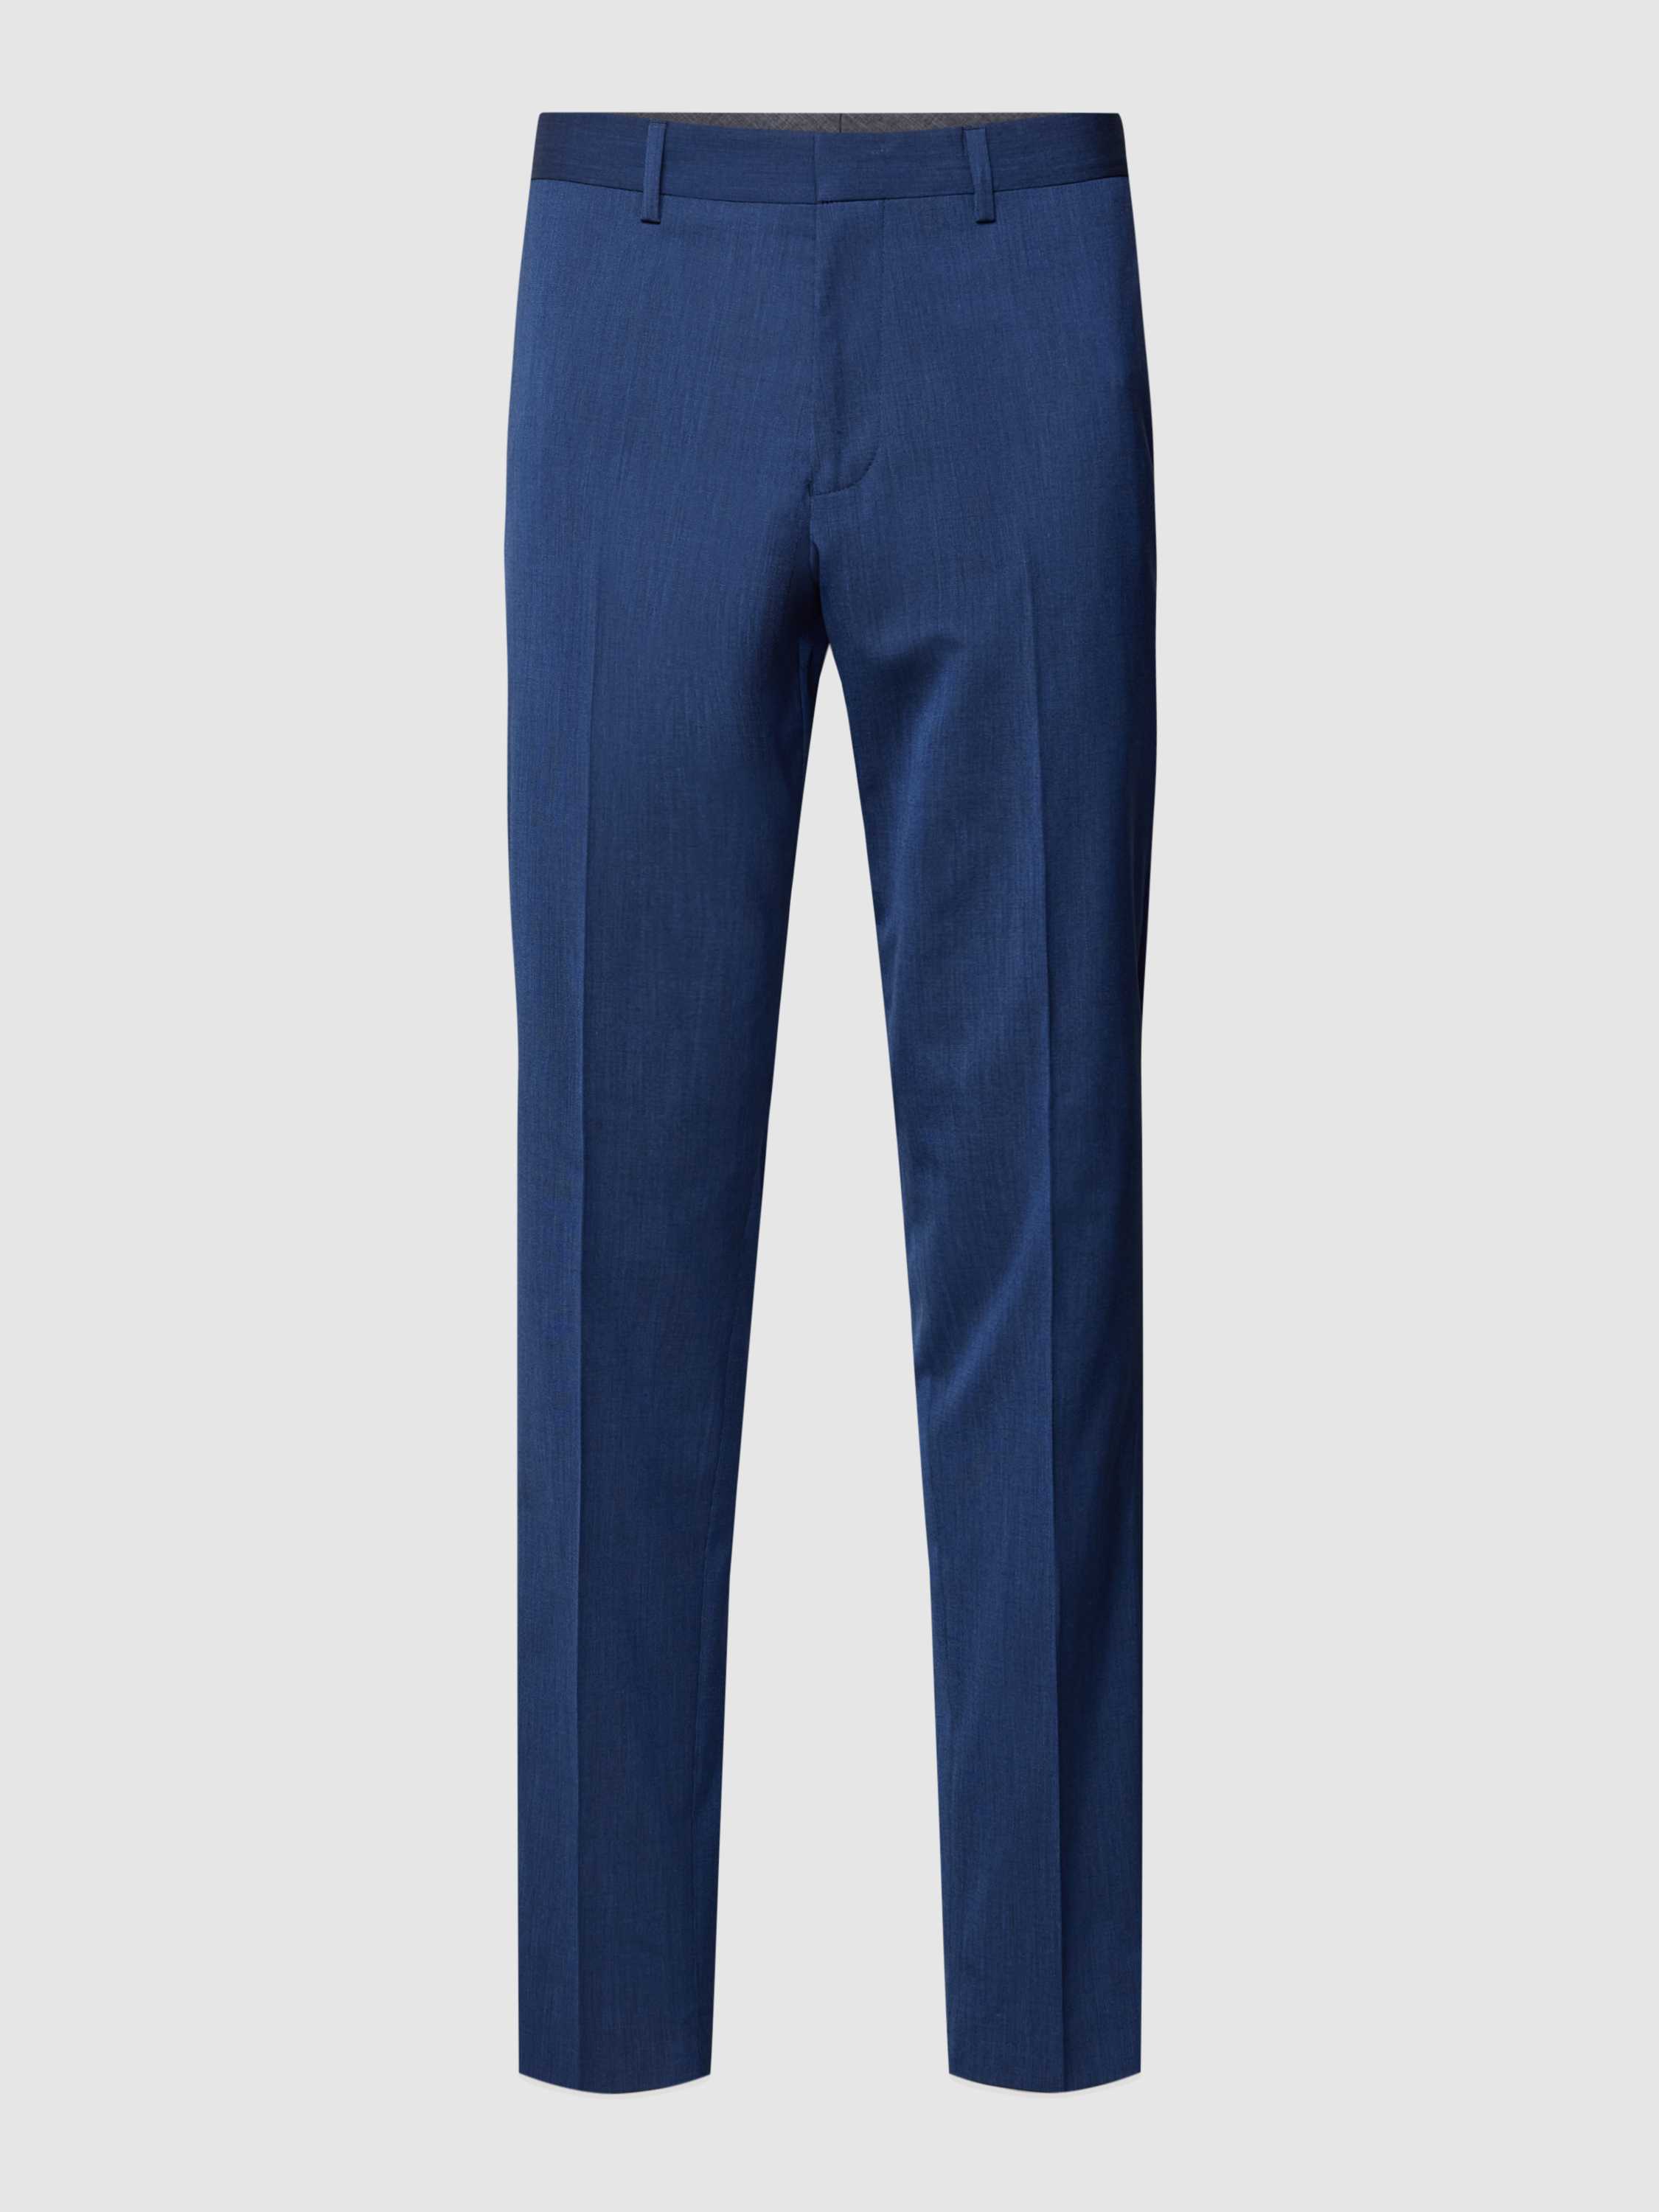 S. OLIVER BLACK LABEL Pantalon in koningsblauw met persplooien model 'Opure'